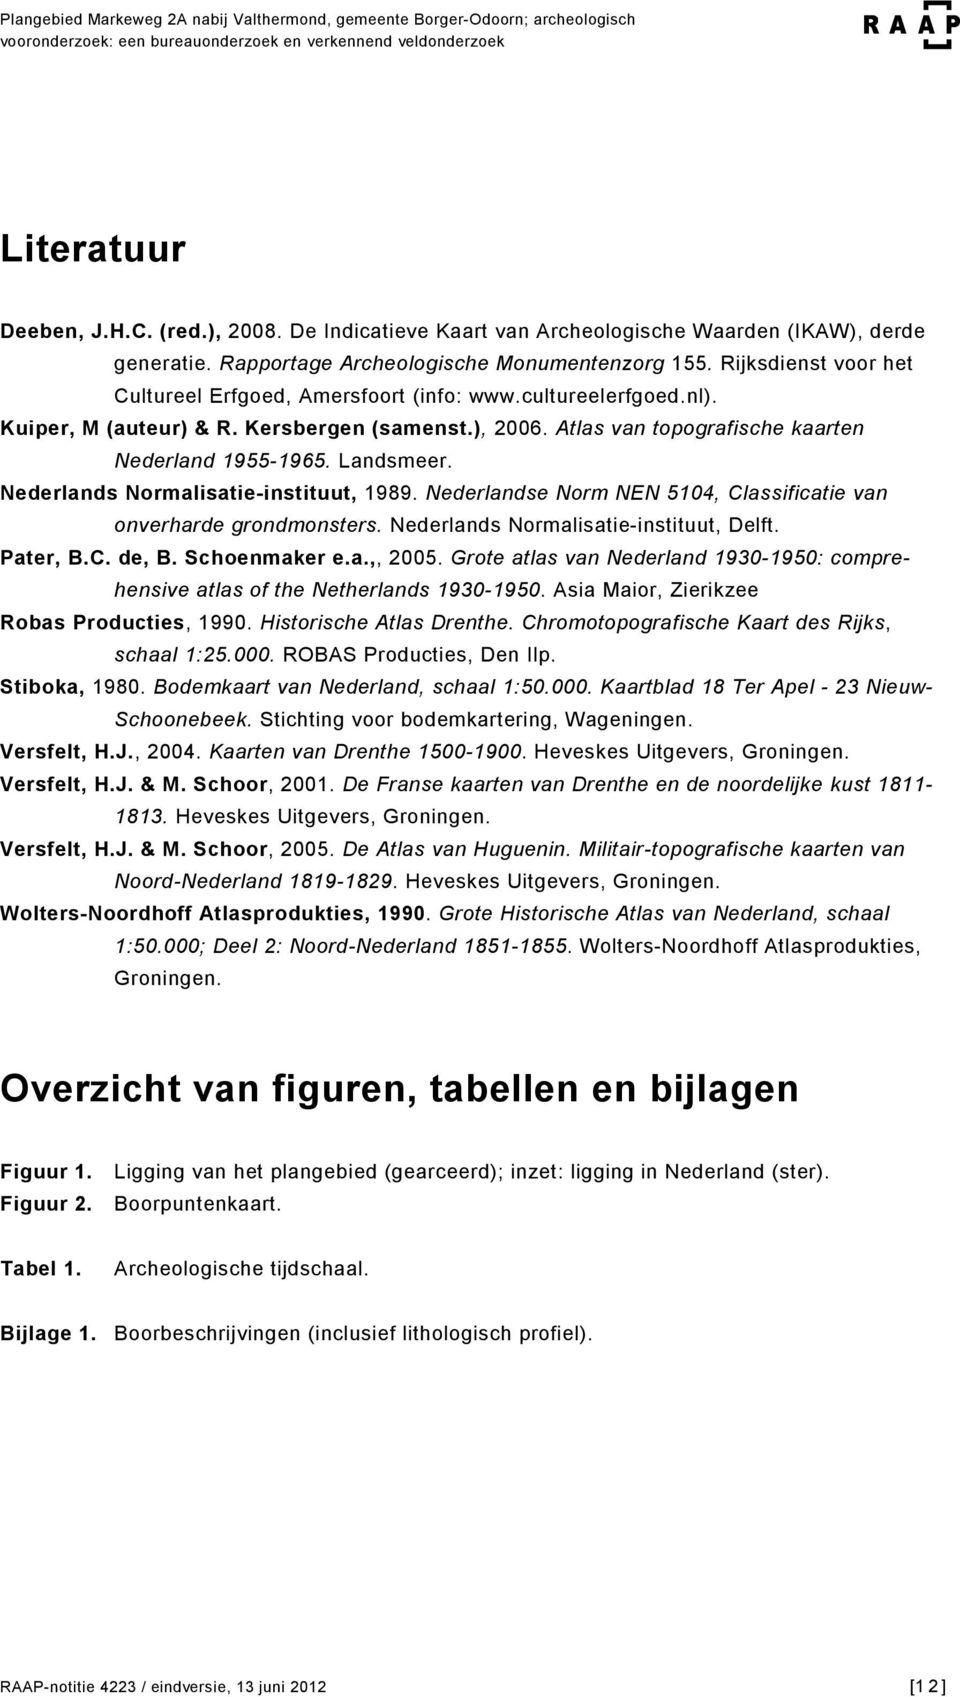 Nederlands Normalisatie-instituut, 1989. Nederlandse Norm NEN 5104, Classificatie van onverharde grondmonsters. Nederlands Normalisatie-instituut, Delft. Pater, B.C. de, B. Schoenmaker e.a.,, 2005.